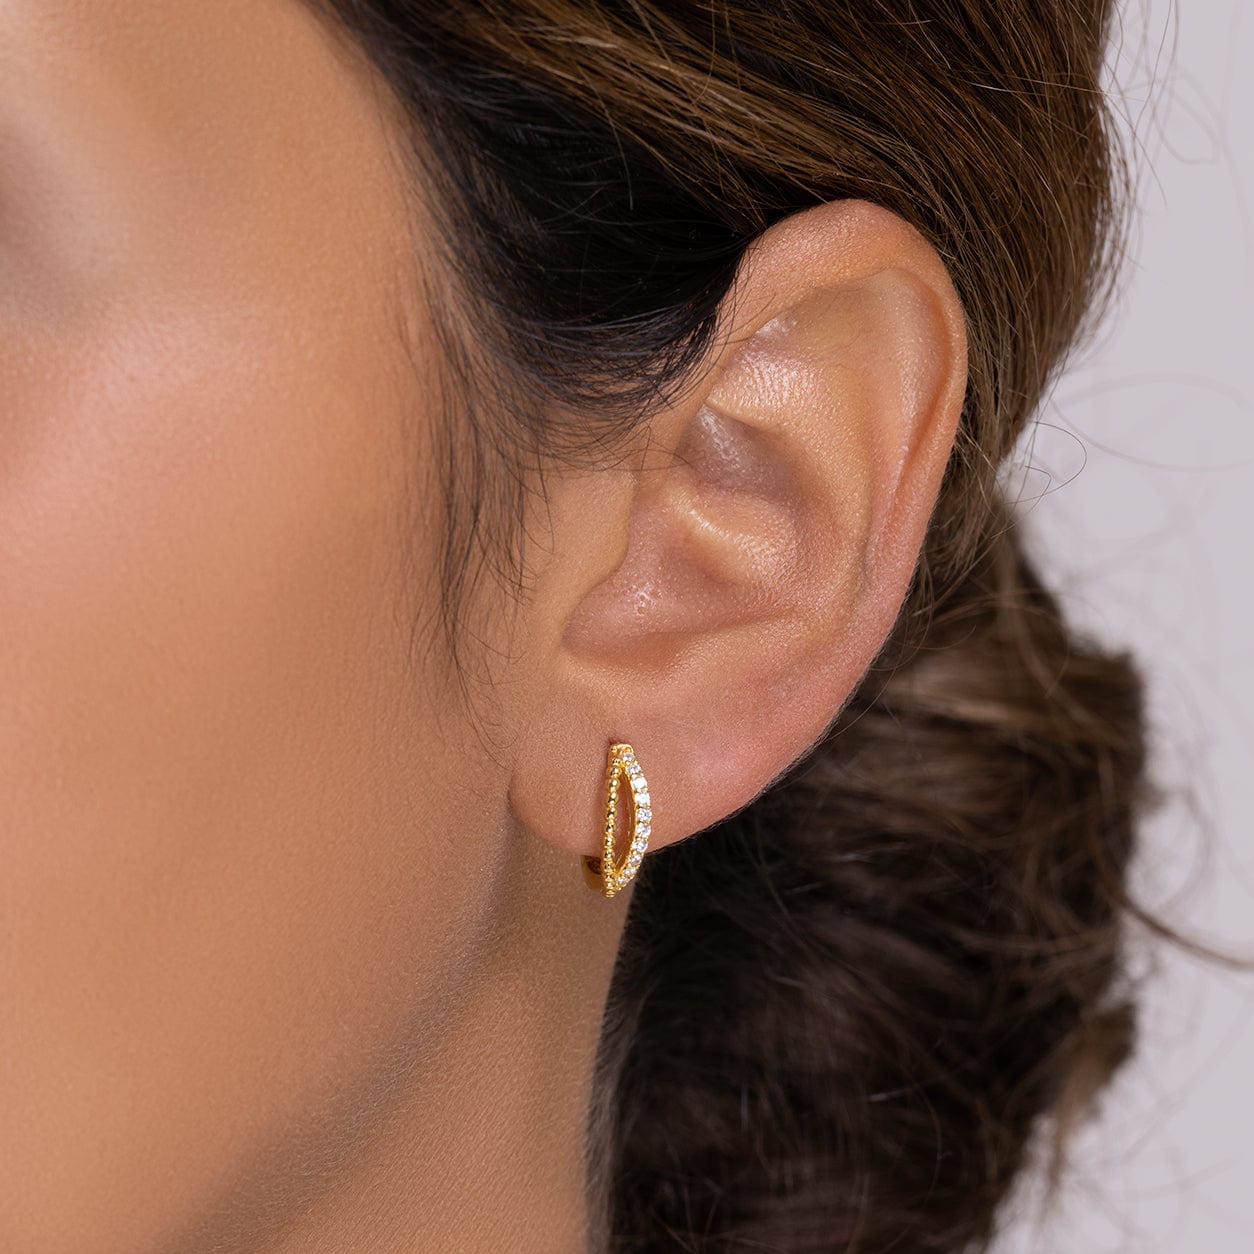 Buy Gold Earrings Online